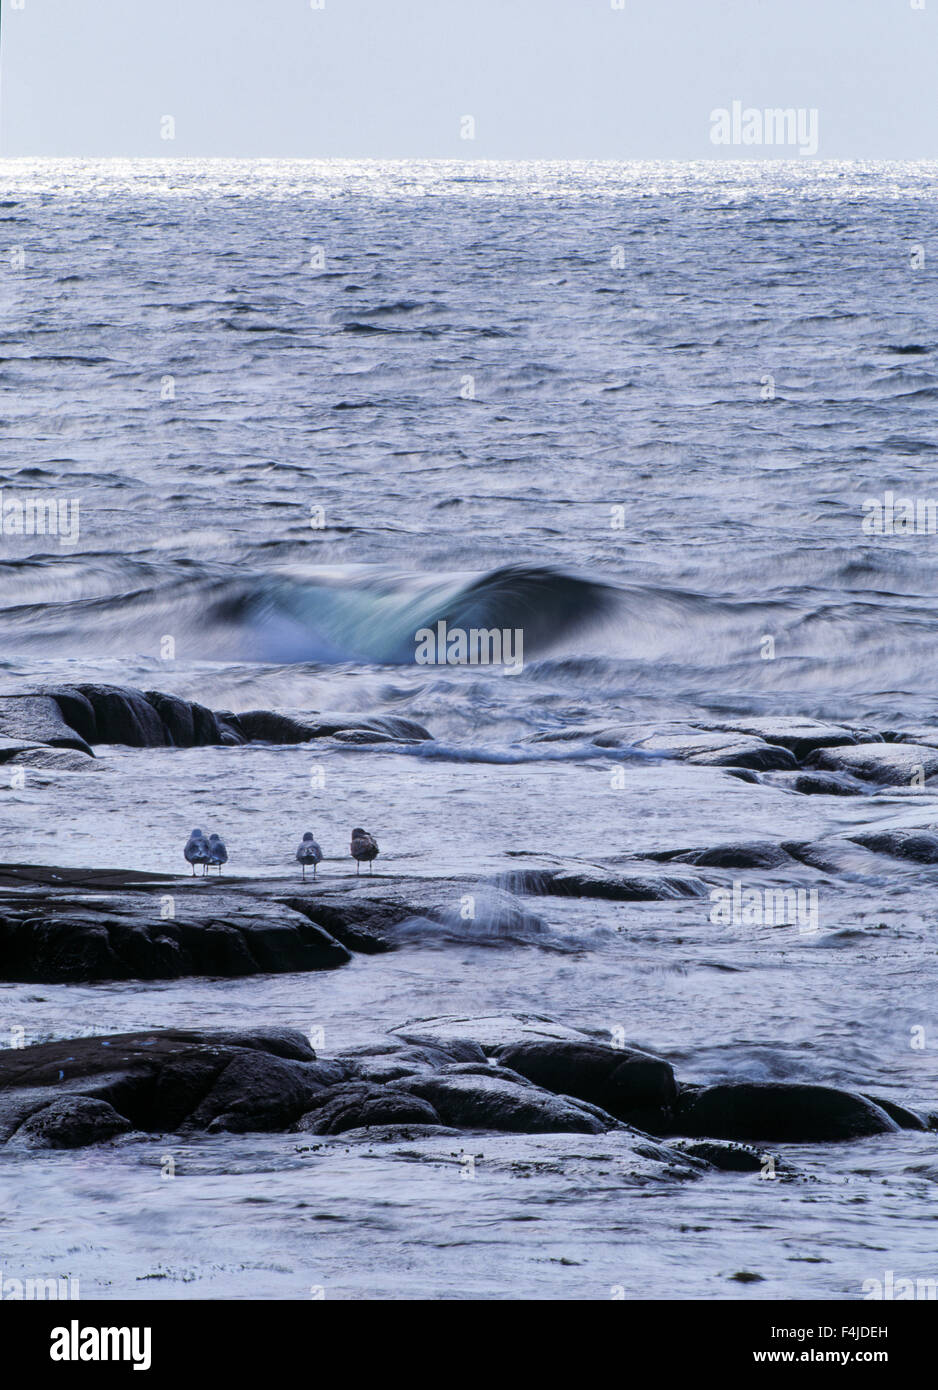 Playa Costa charadriiformes aves gaviota imagen color Halland lari ningún pueblo afuera de Escandinavia Suecia piedra de mar de agua verticales Foto de stock